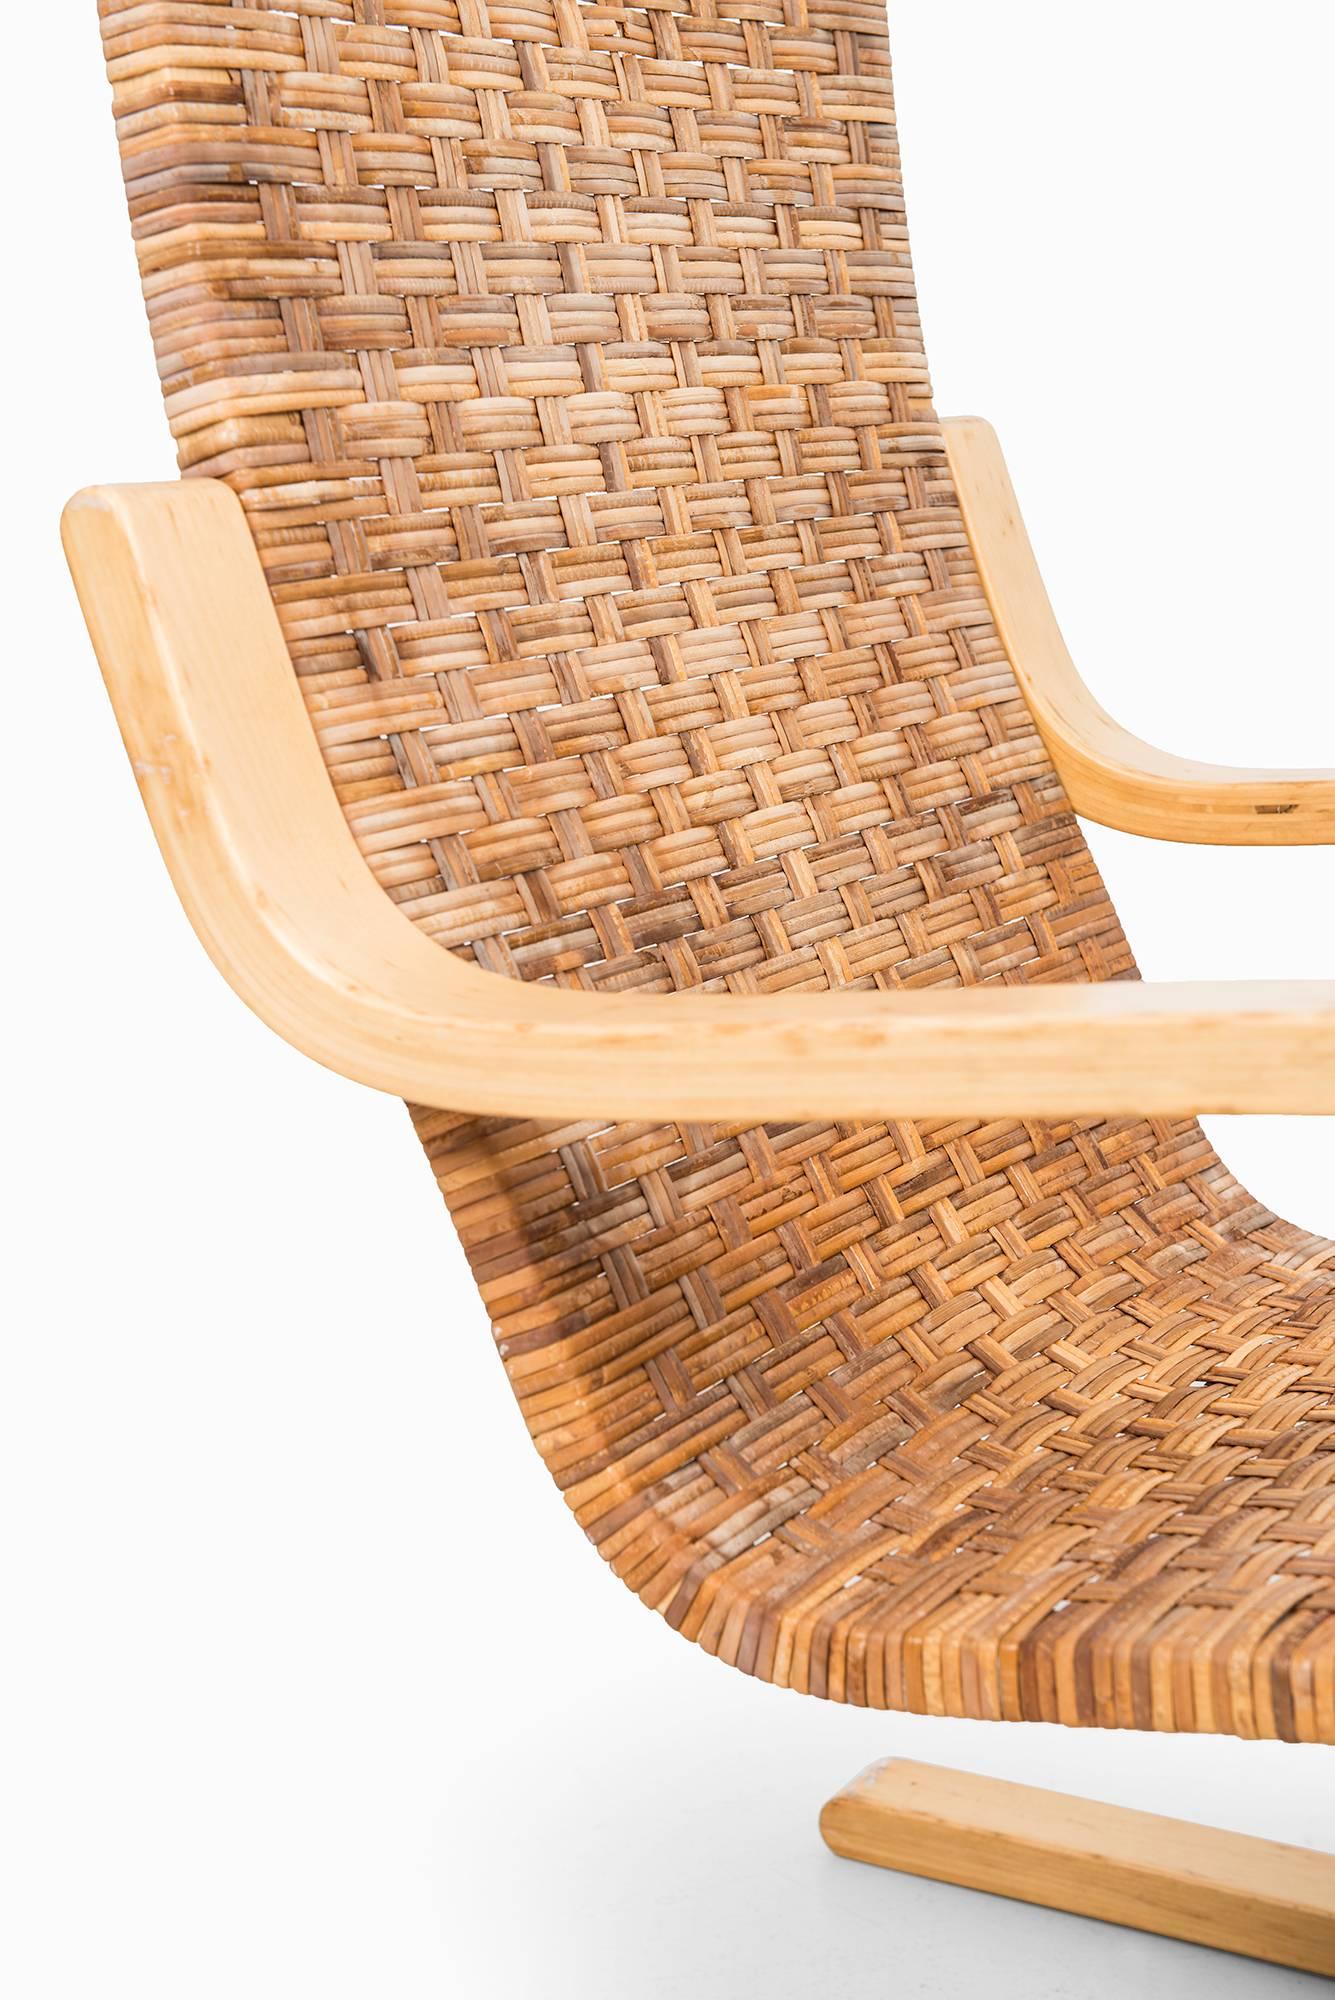 Scandinavian Modern Alvar Aalto Easy Chair Model 406 by Artek in Finland